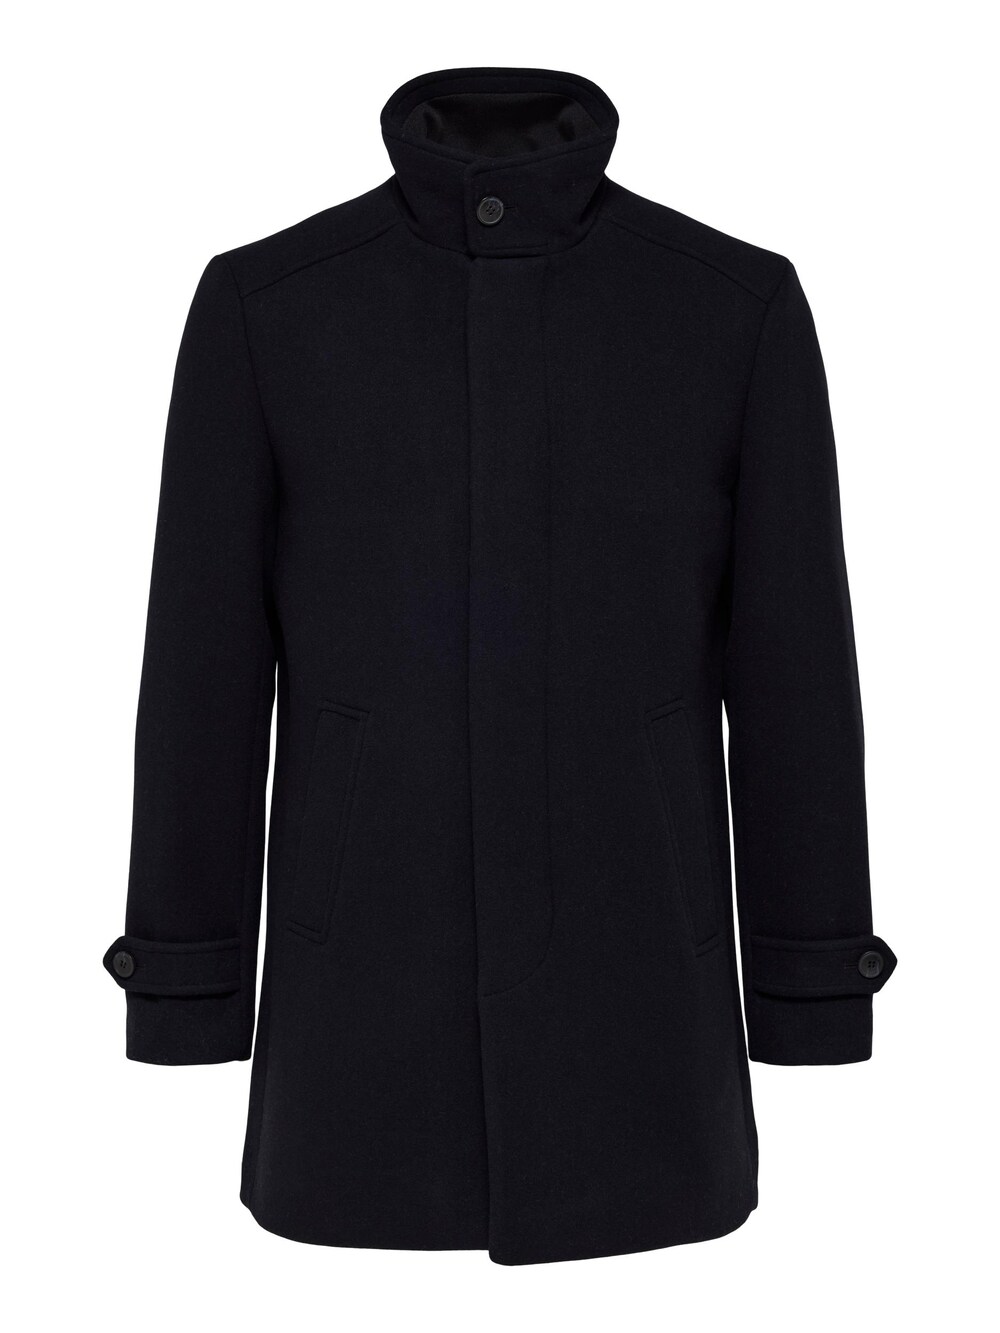 Межсезонное пальто SELECTED HOMME Reuben, черный межсезонное пальто selected new element черный